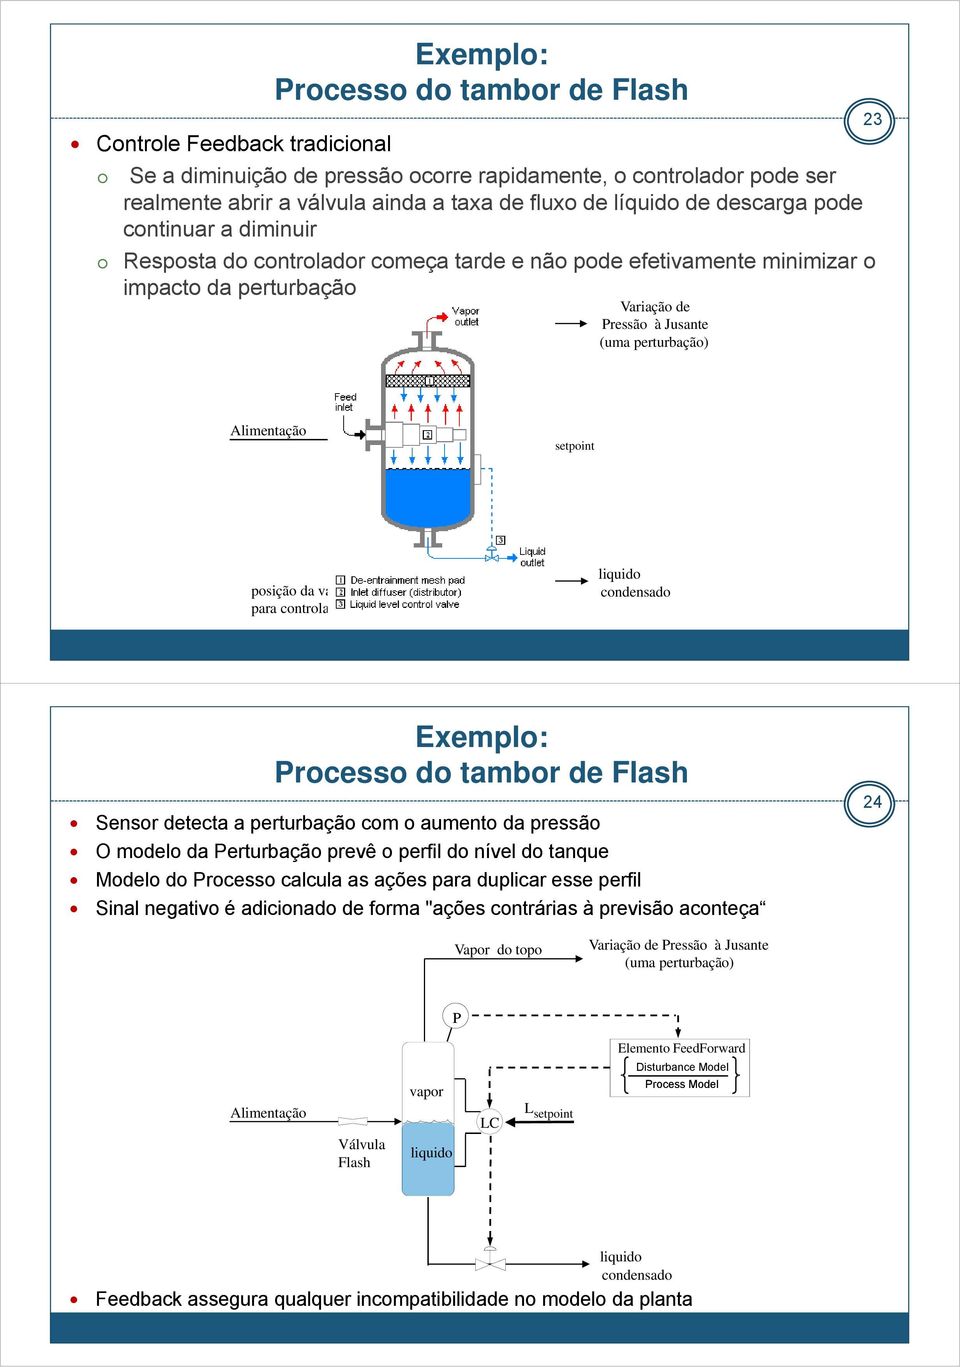 Alimentação Válvula Flash vapor liquido LC L setpoint posição da válvula manipulada para controlar o nível do líquido liquido condensado Exemplo: Processo do tambor de Flash Sensor detecta a